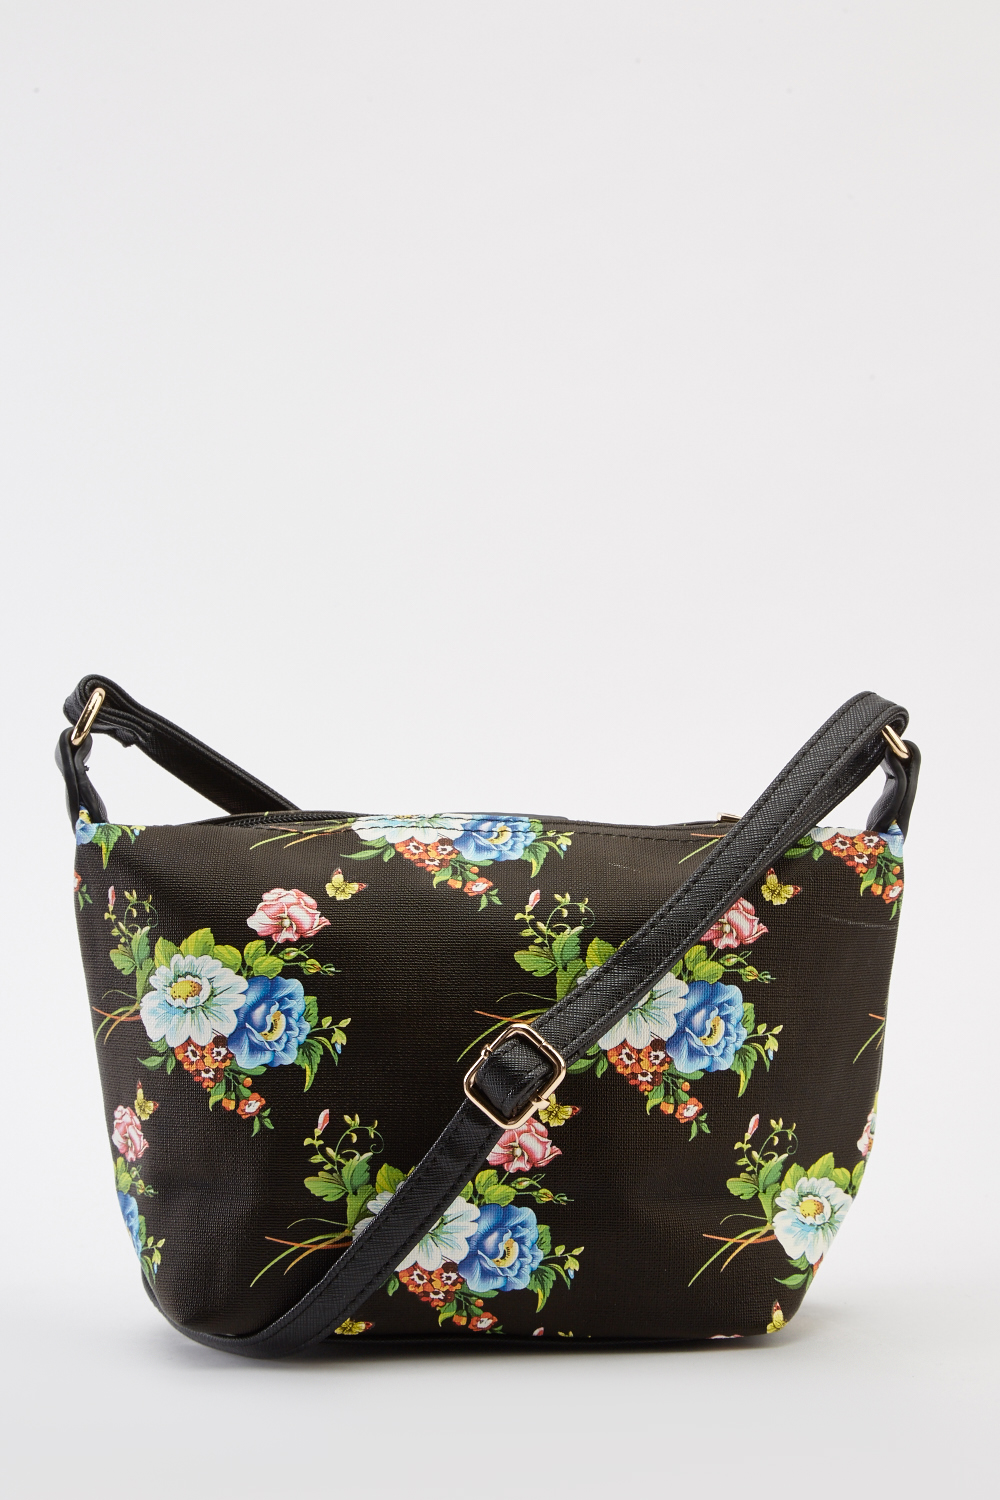 Floral Print Cross-Body Bag - Just $7